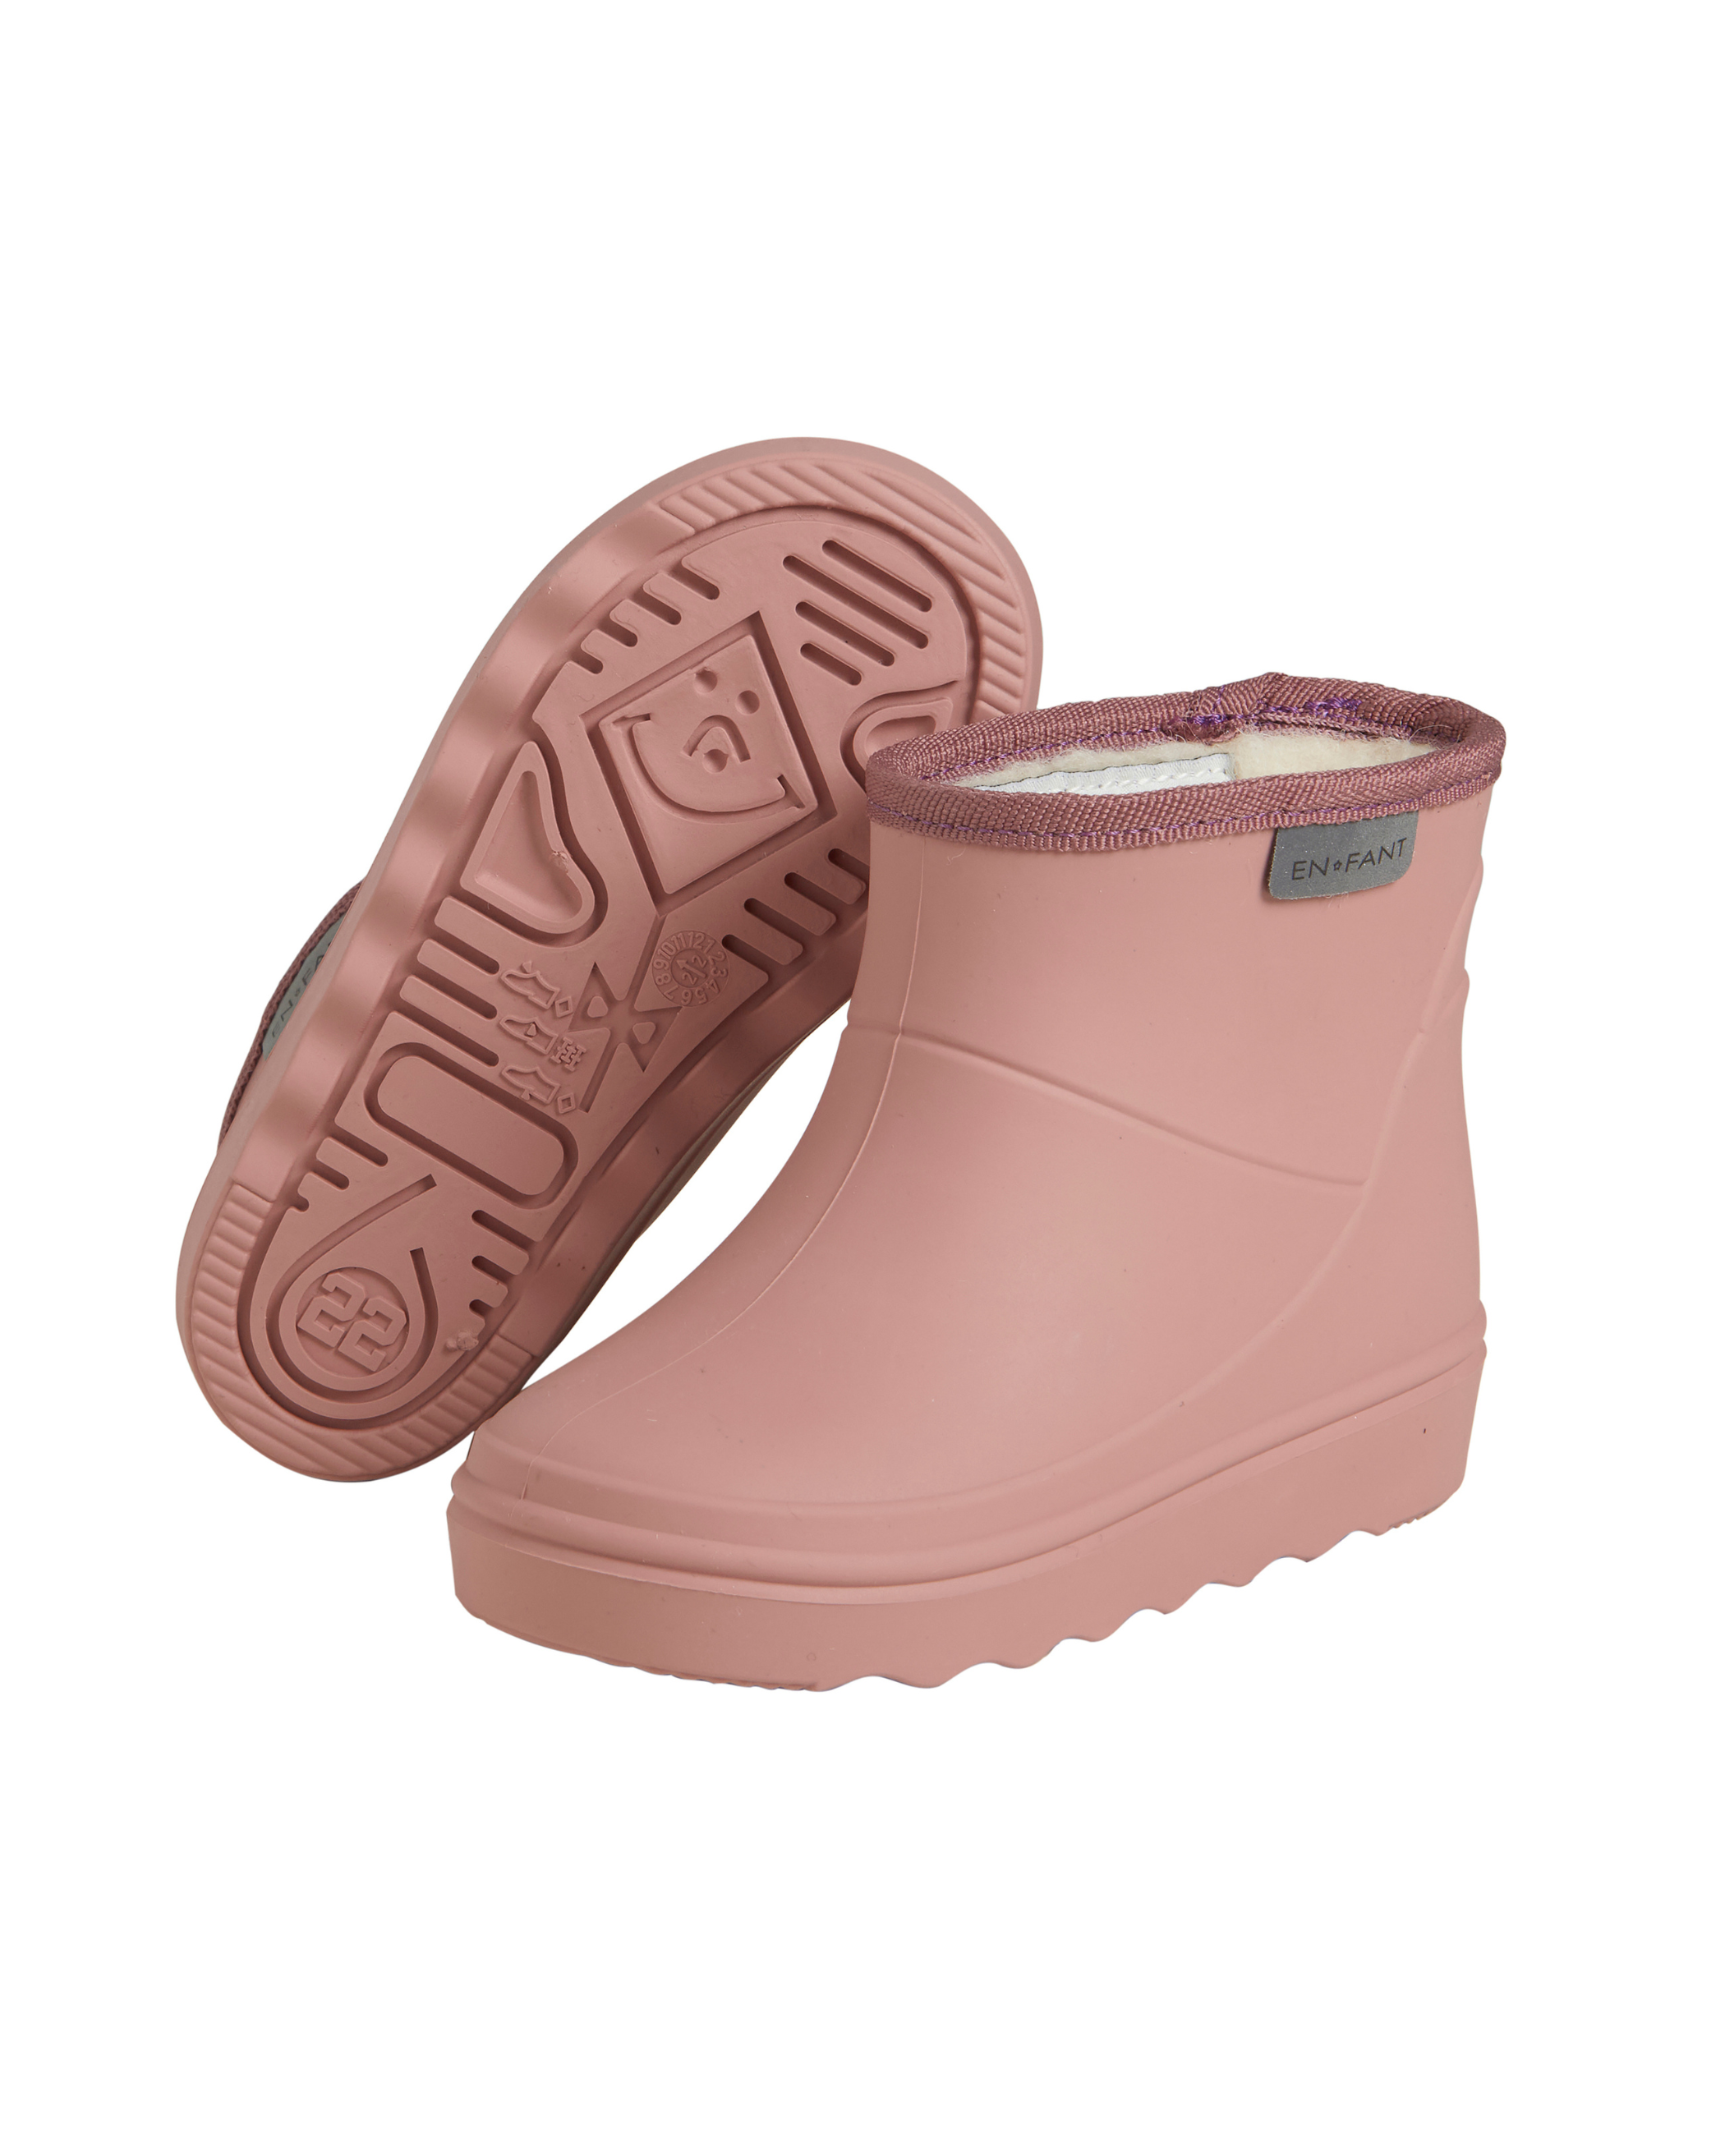 En Fant - Thermo Boots Støvler, korte - Børn - Rosa